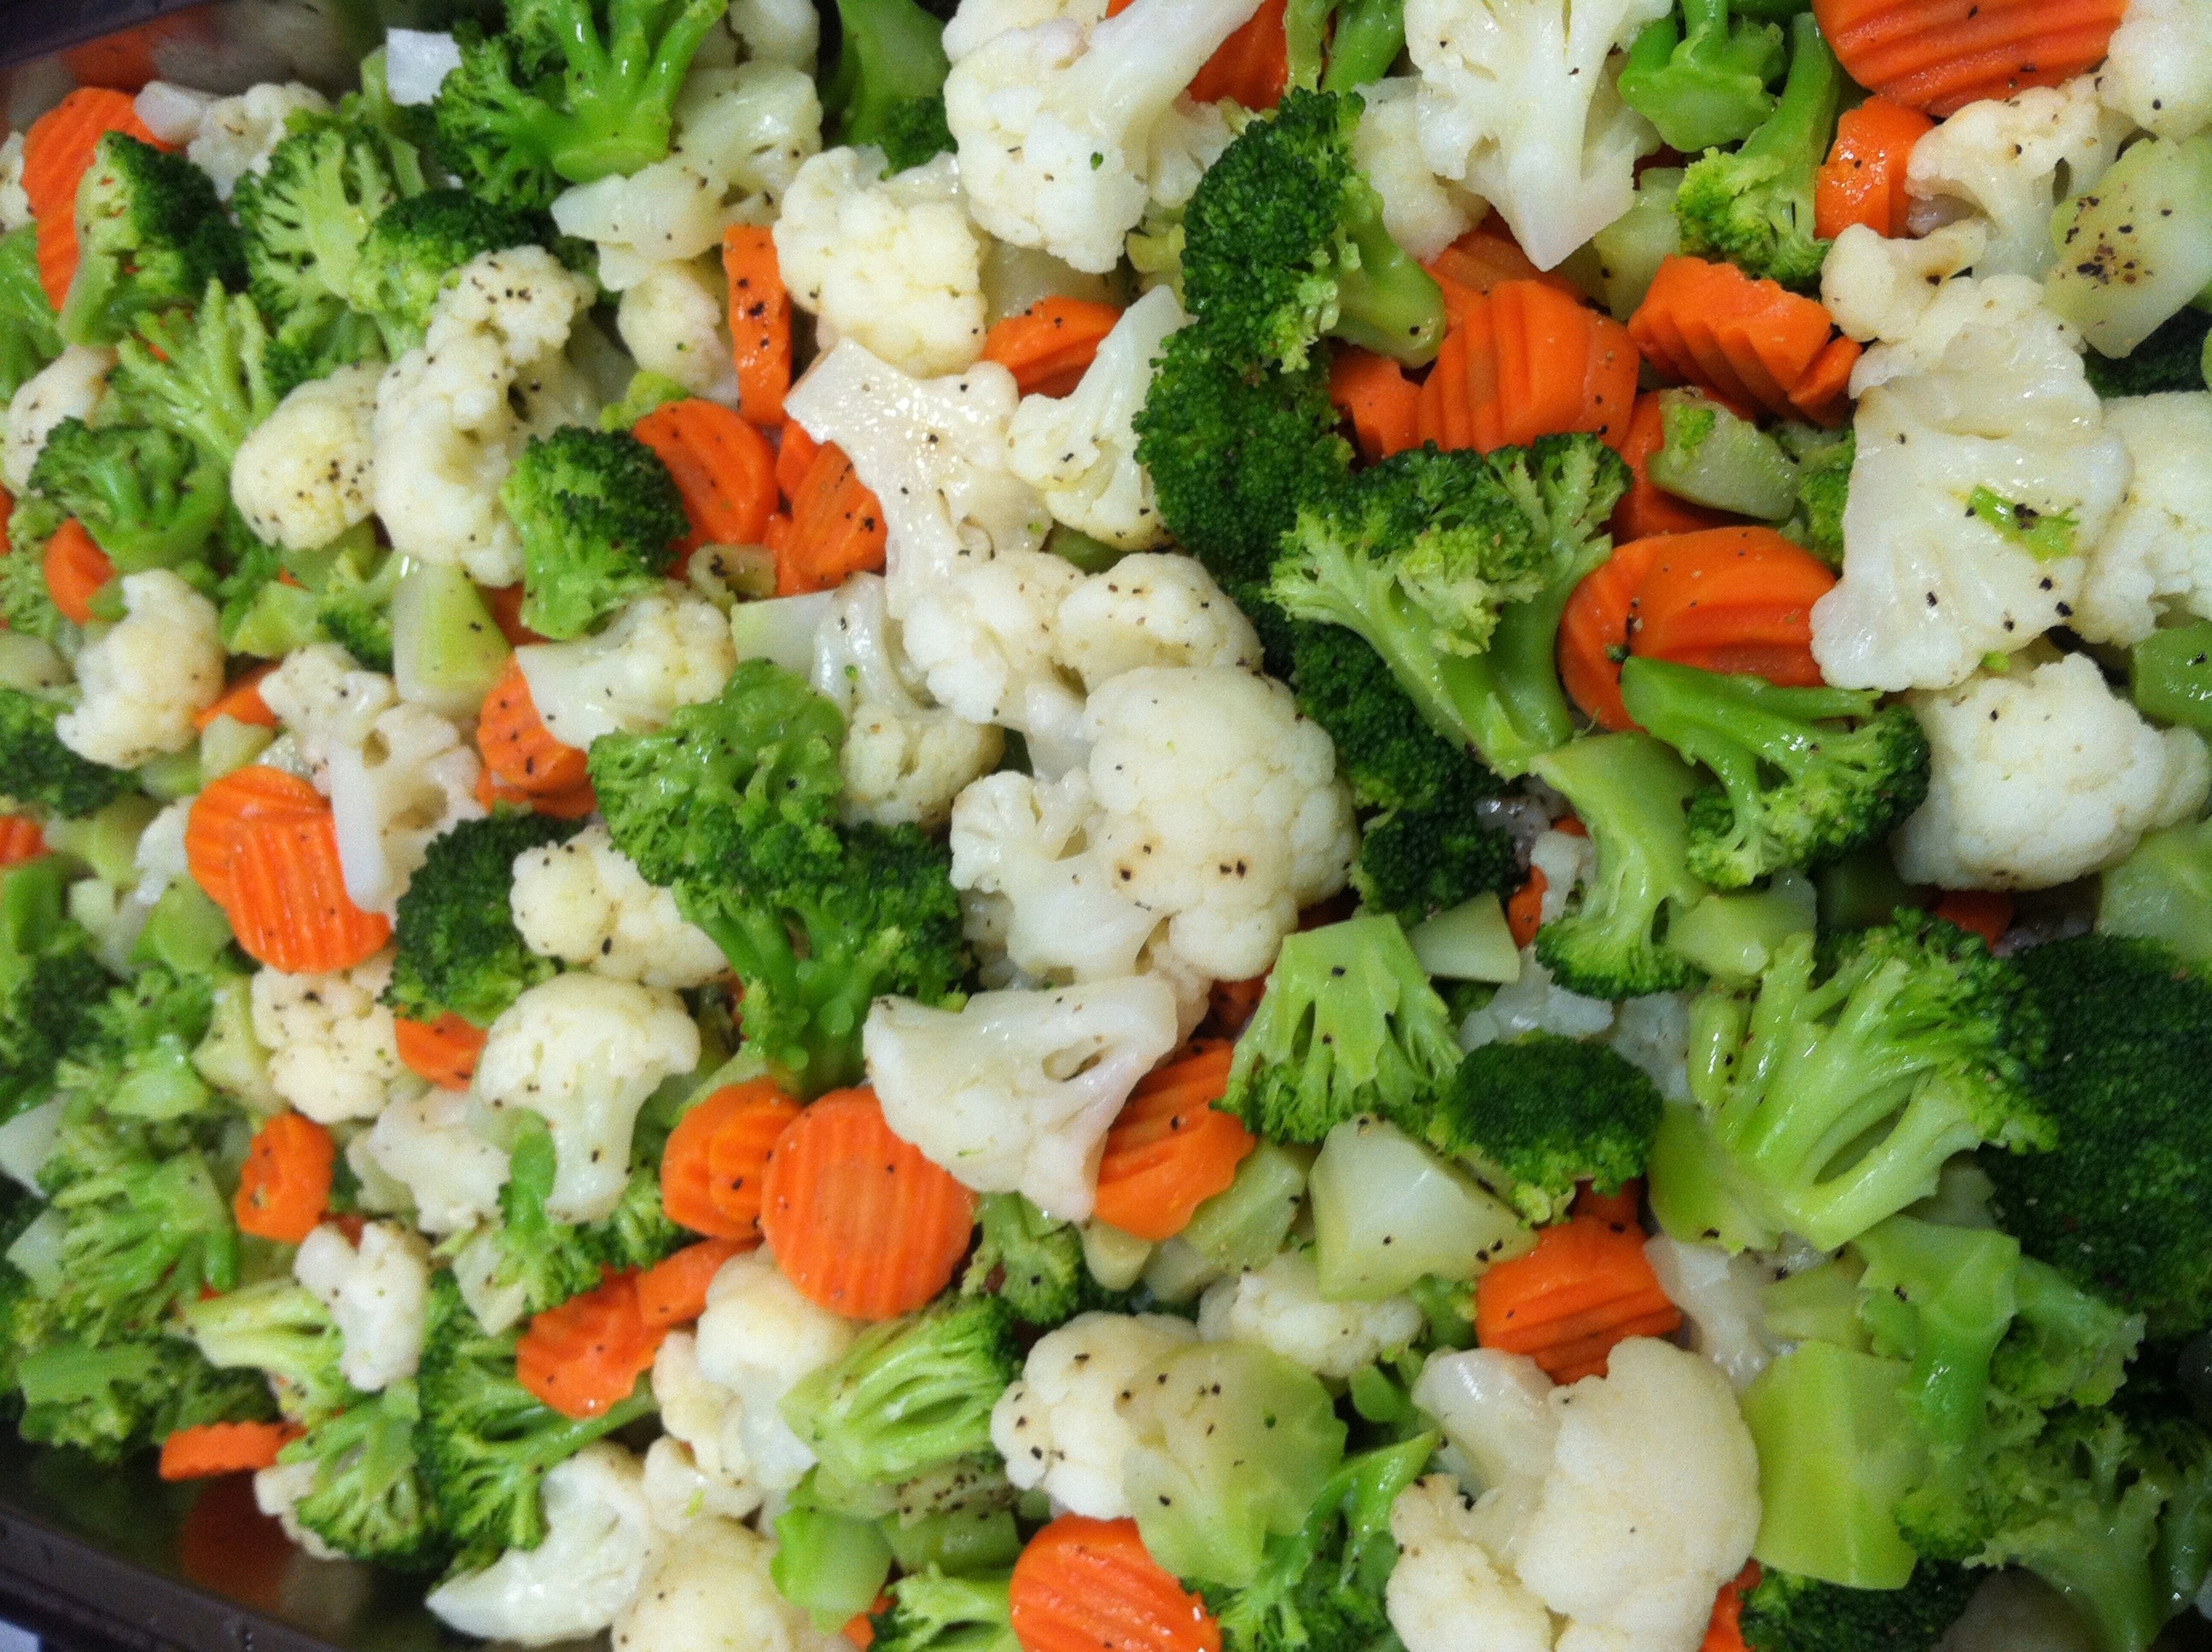 Mixed vegetables. Овощи на пару. Гарнир из овощей. Овощи приготовленные на пару. Овощи брокколи.